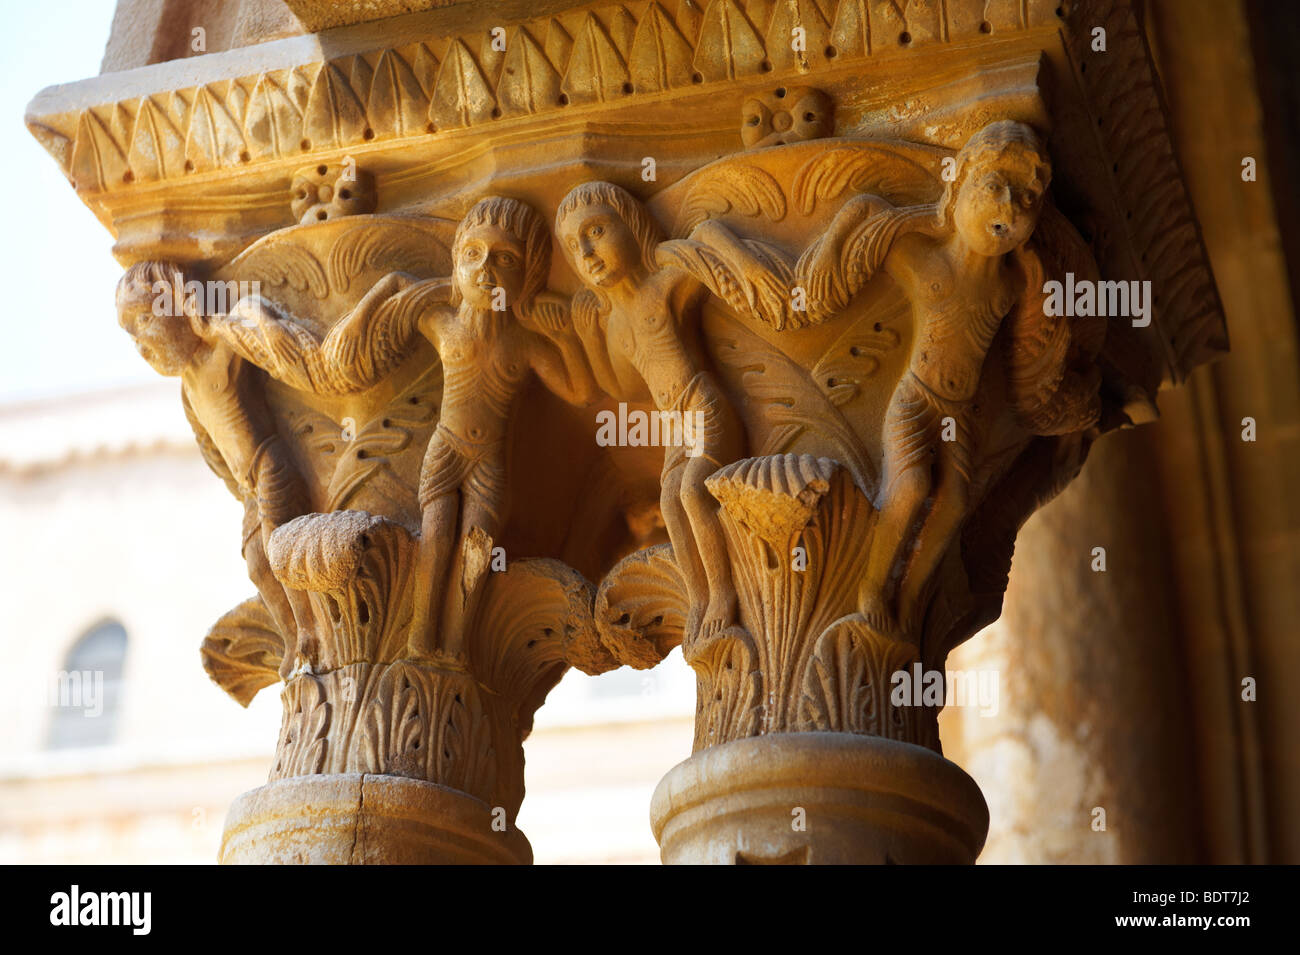 Mittelalterliche historicated Spalte Kapitalien in der Clositers der Kathedrale von Monreale - Palermo - Sizilien dekoriert Stockfoto